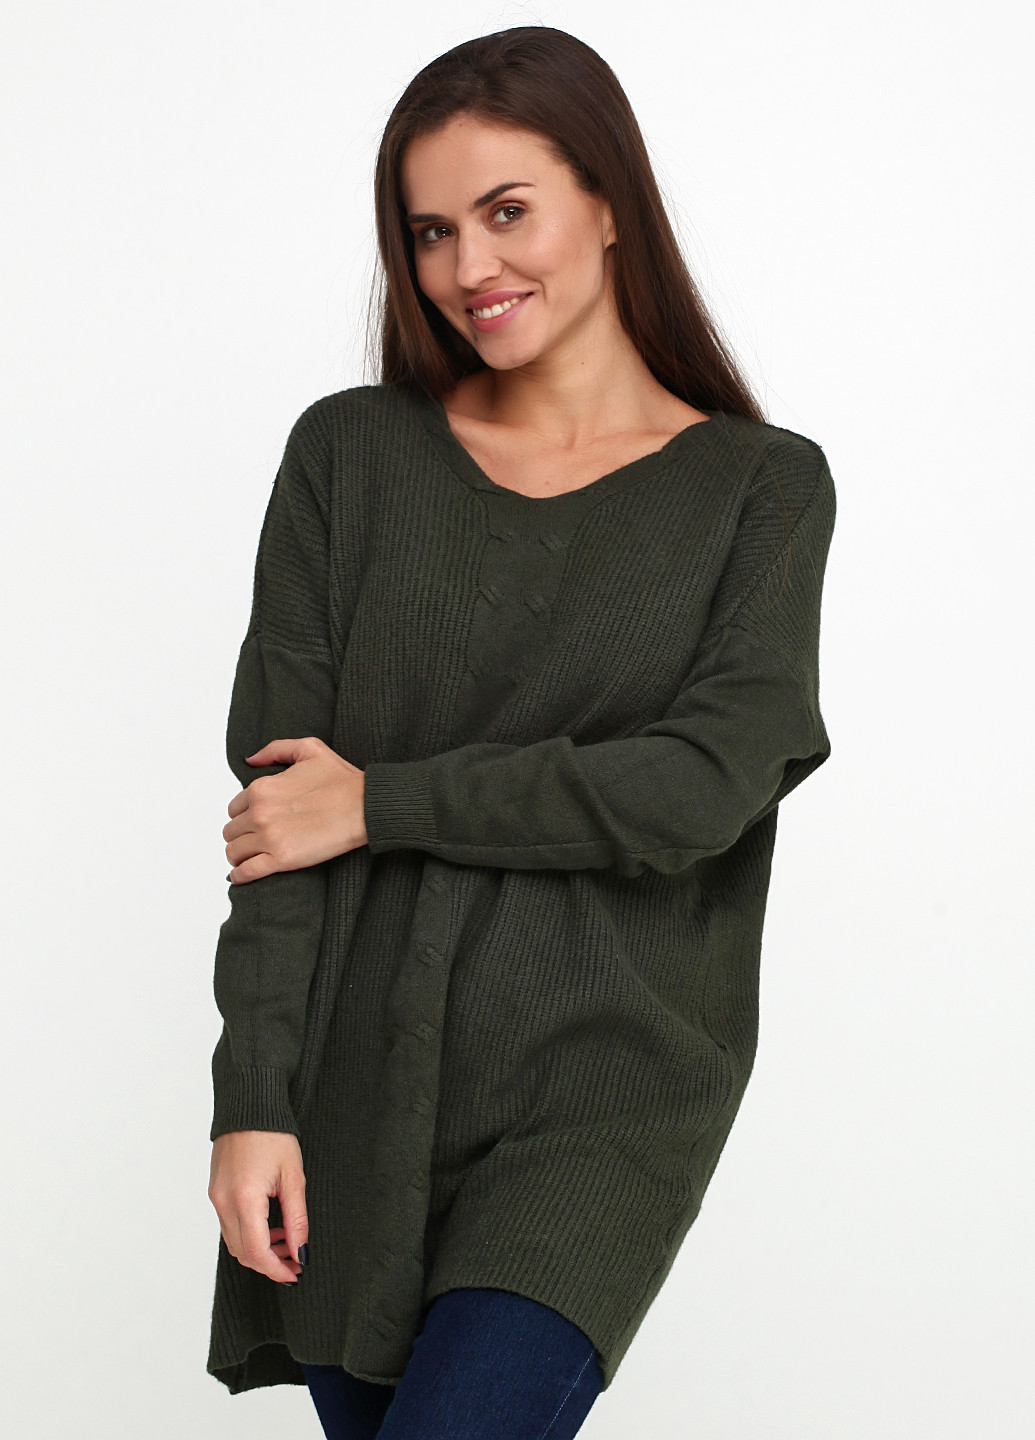 Оливковый (хаки) демисезонный пуловер пуловер Amo & Roma